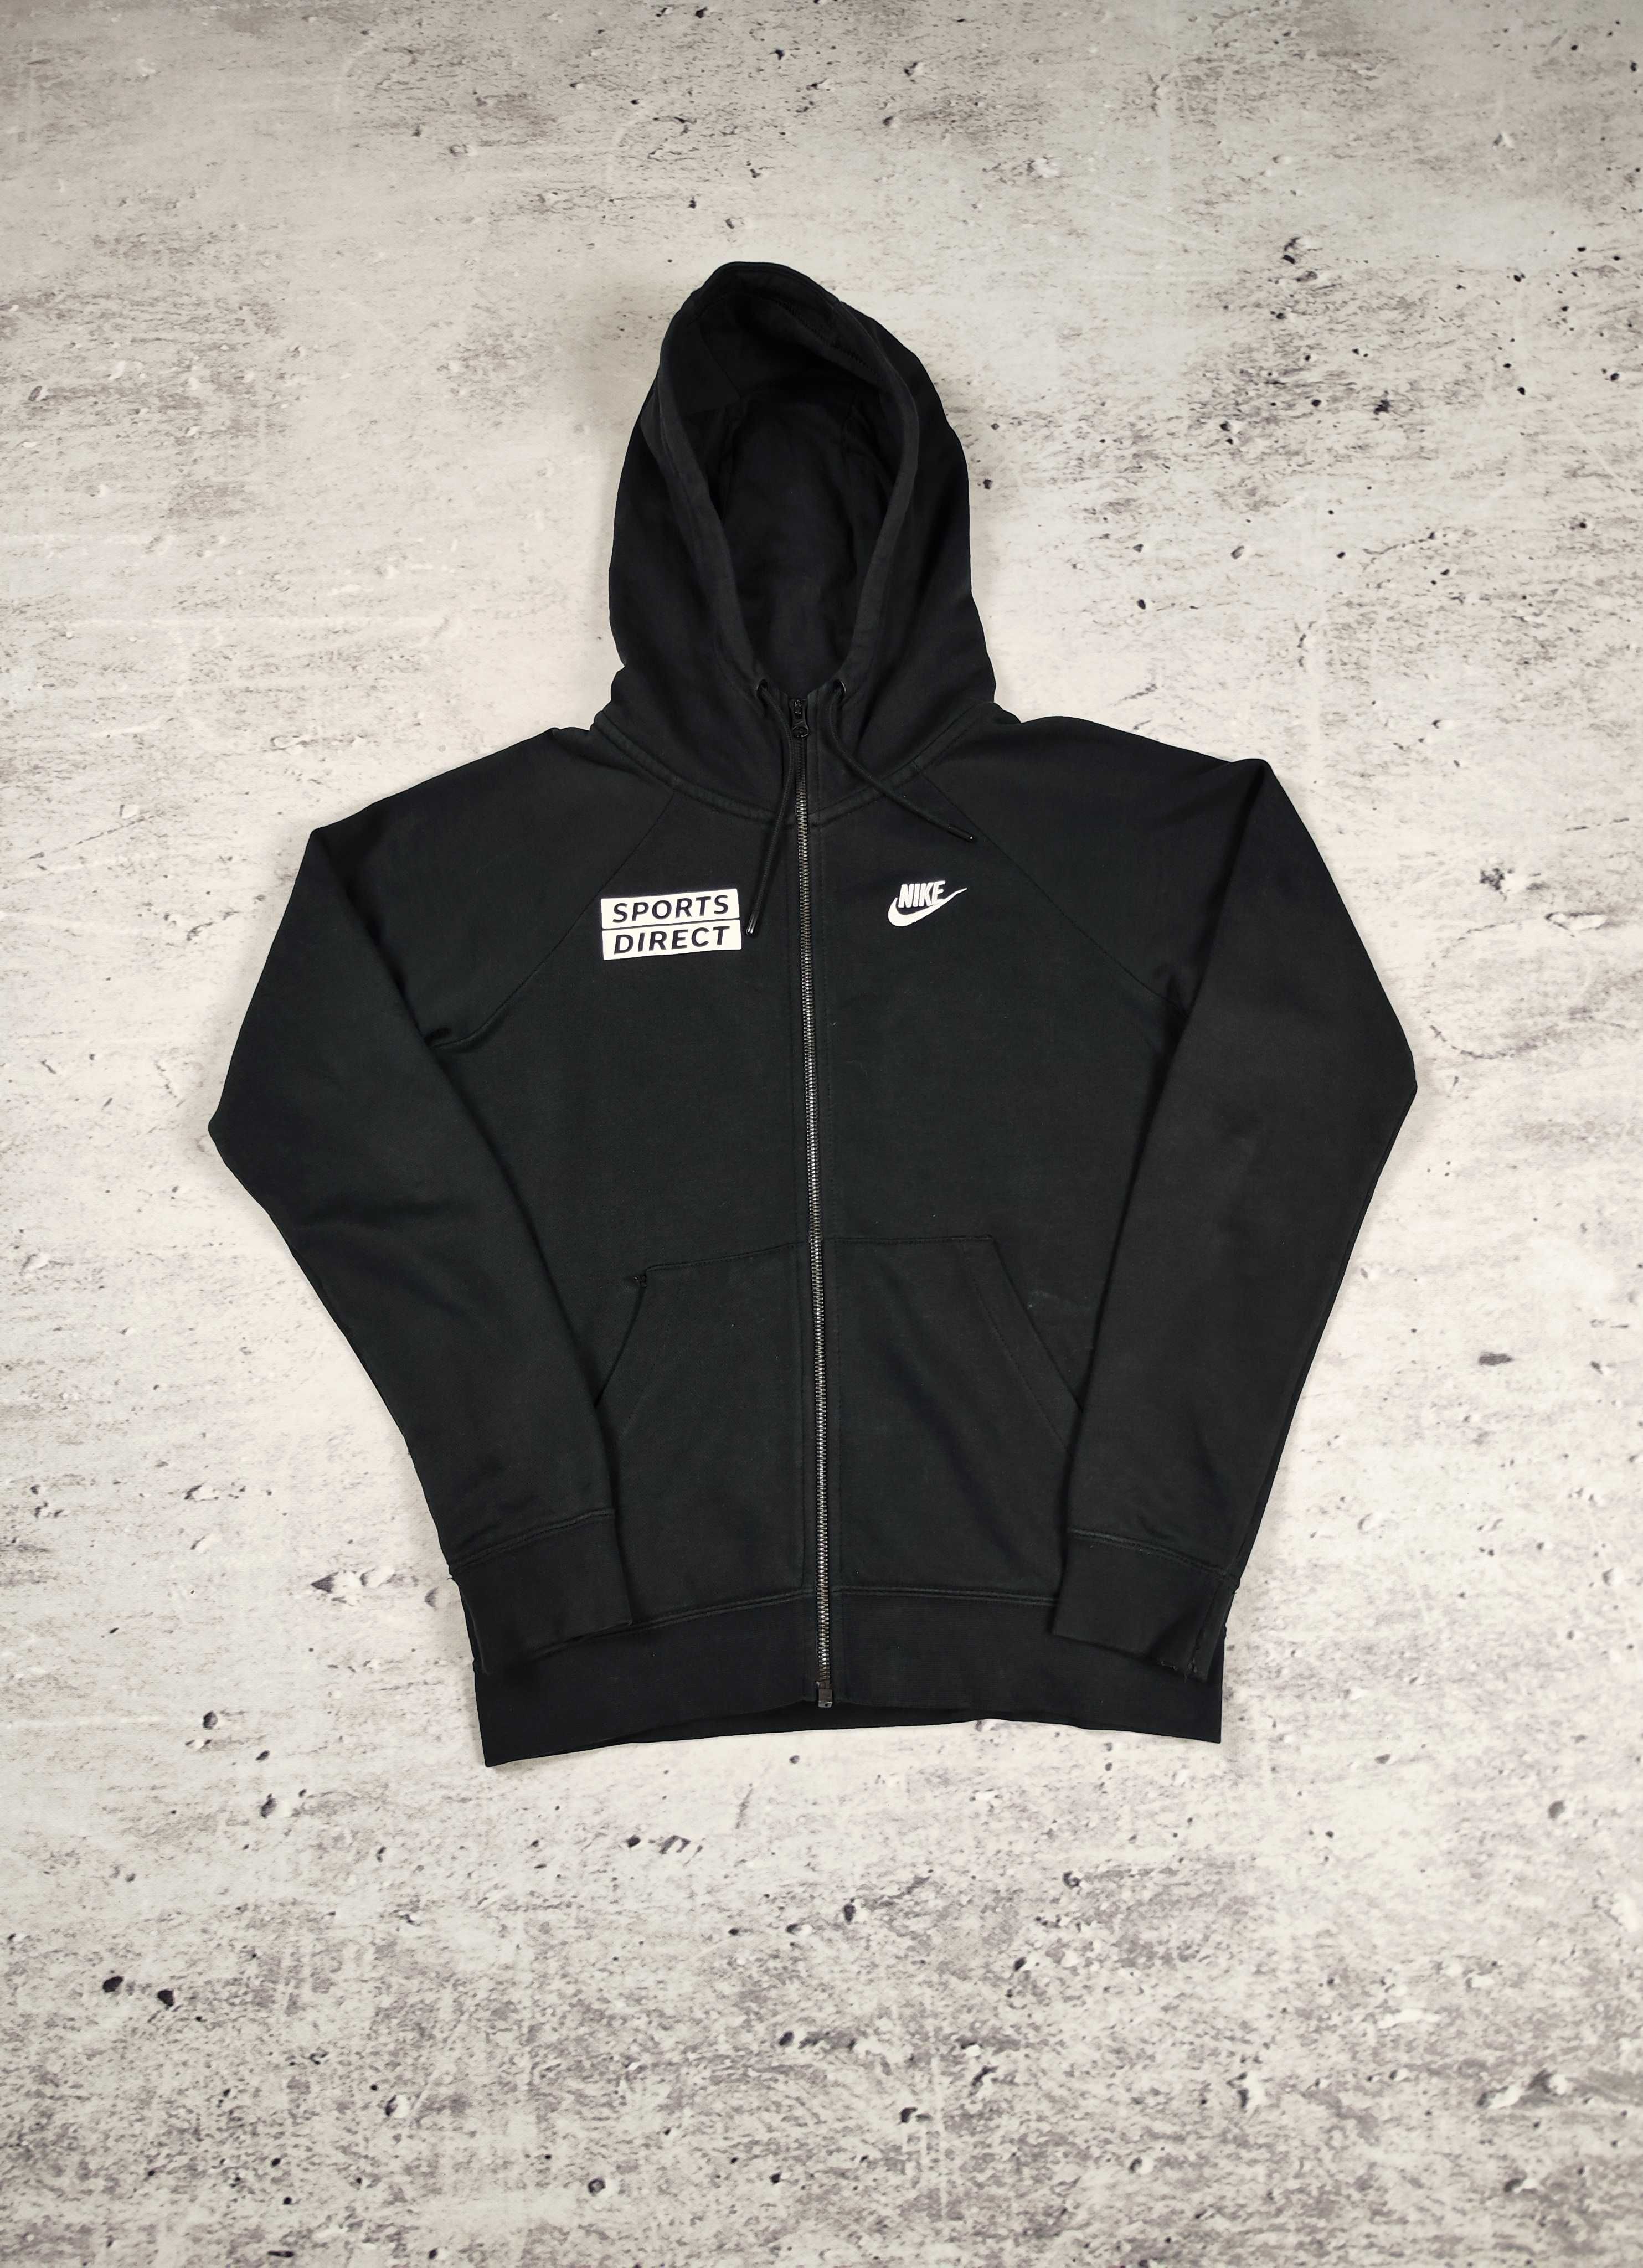 Bluza rozpinana Nike sport direct czarna r. XS